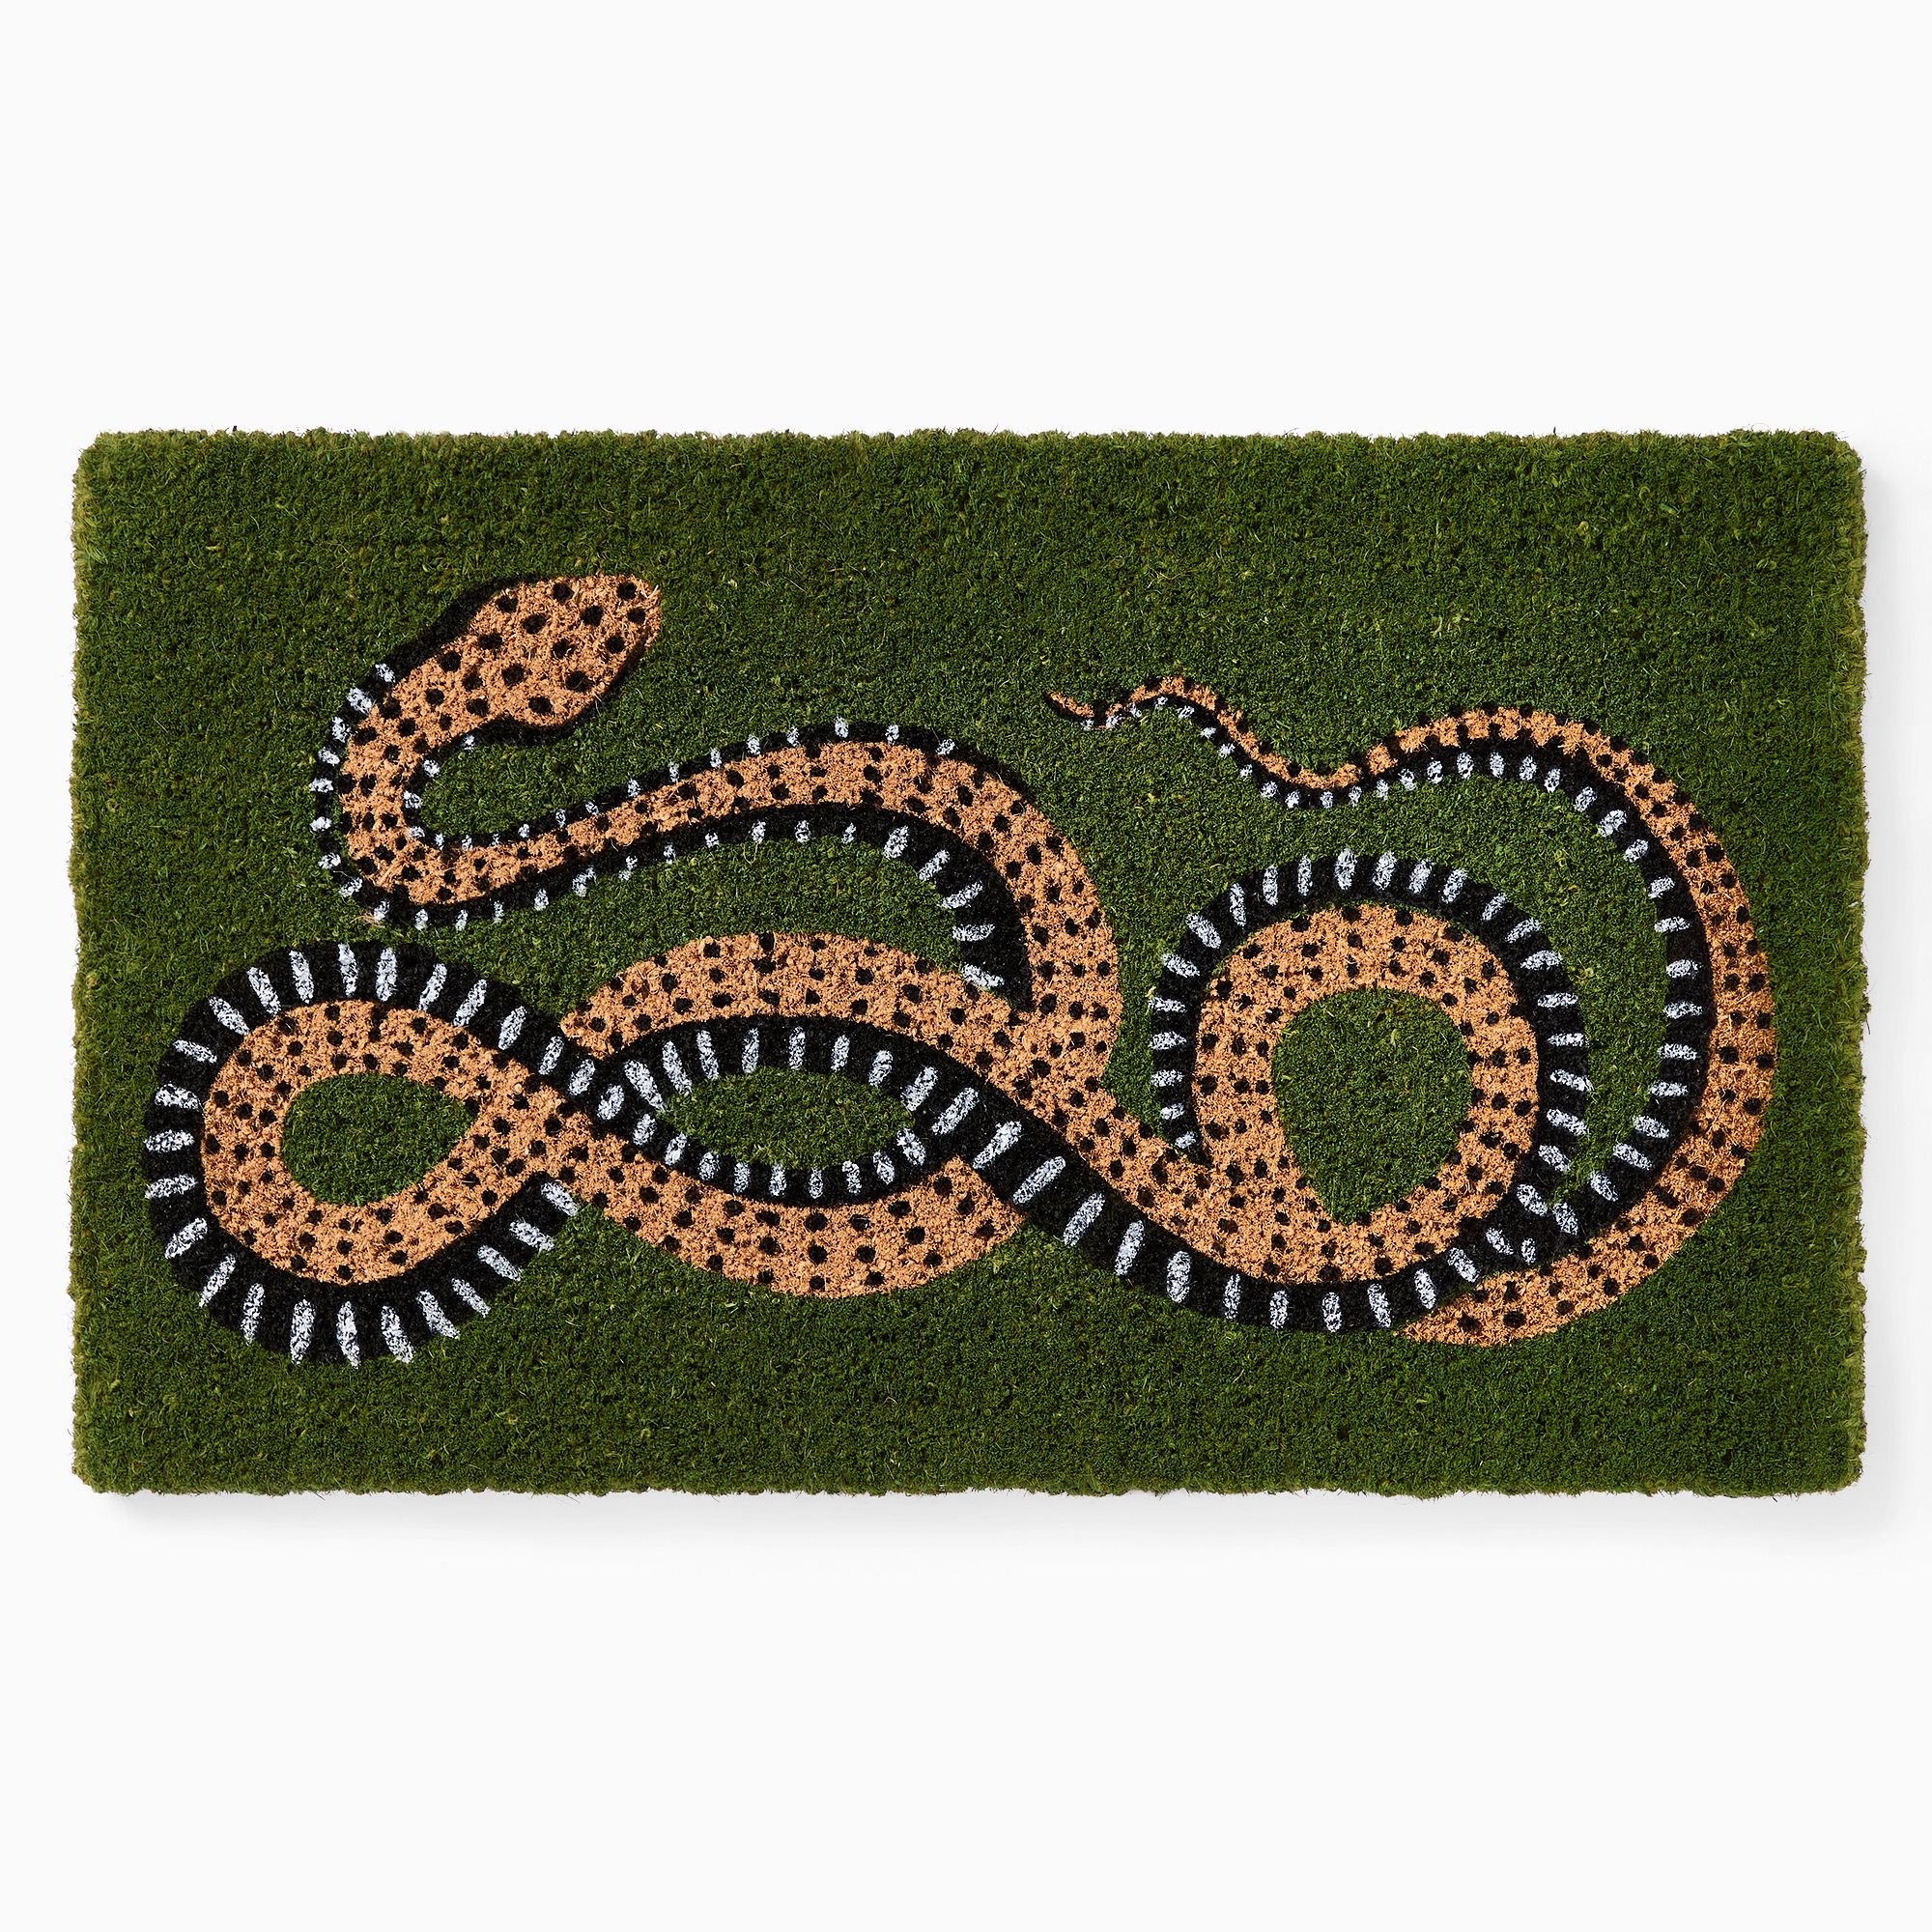 Serpent Doormat - $39 - West Elm